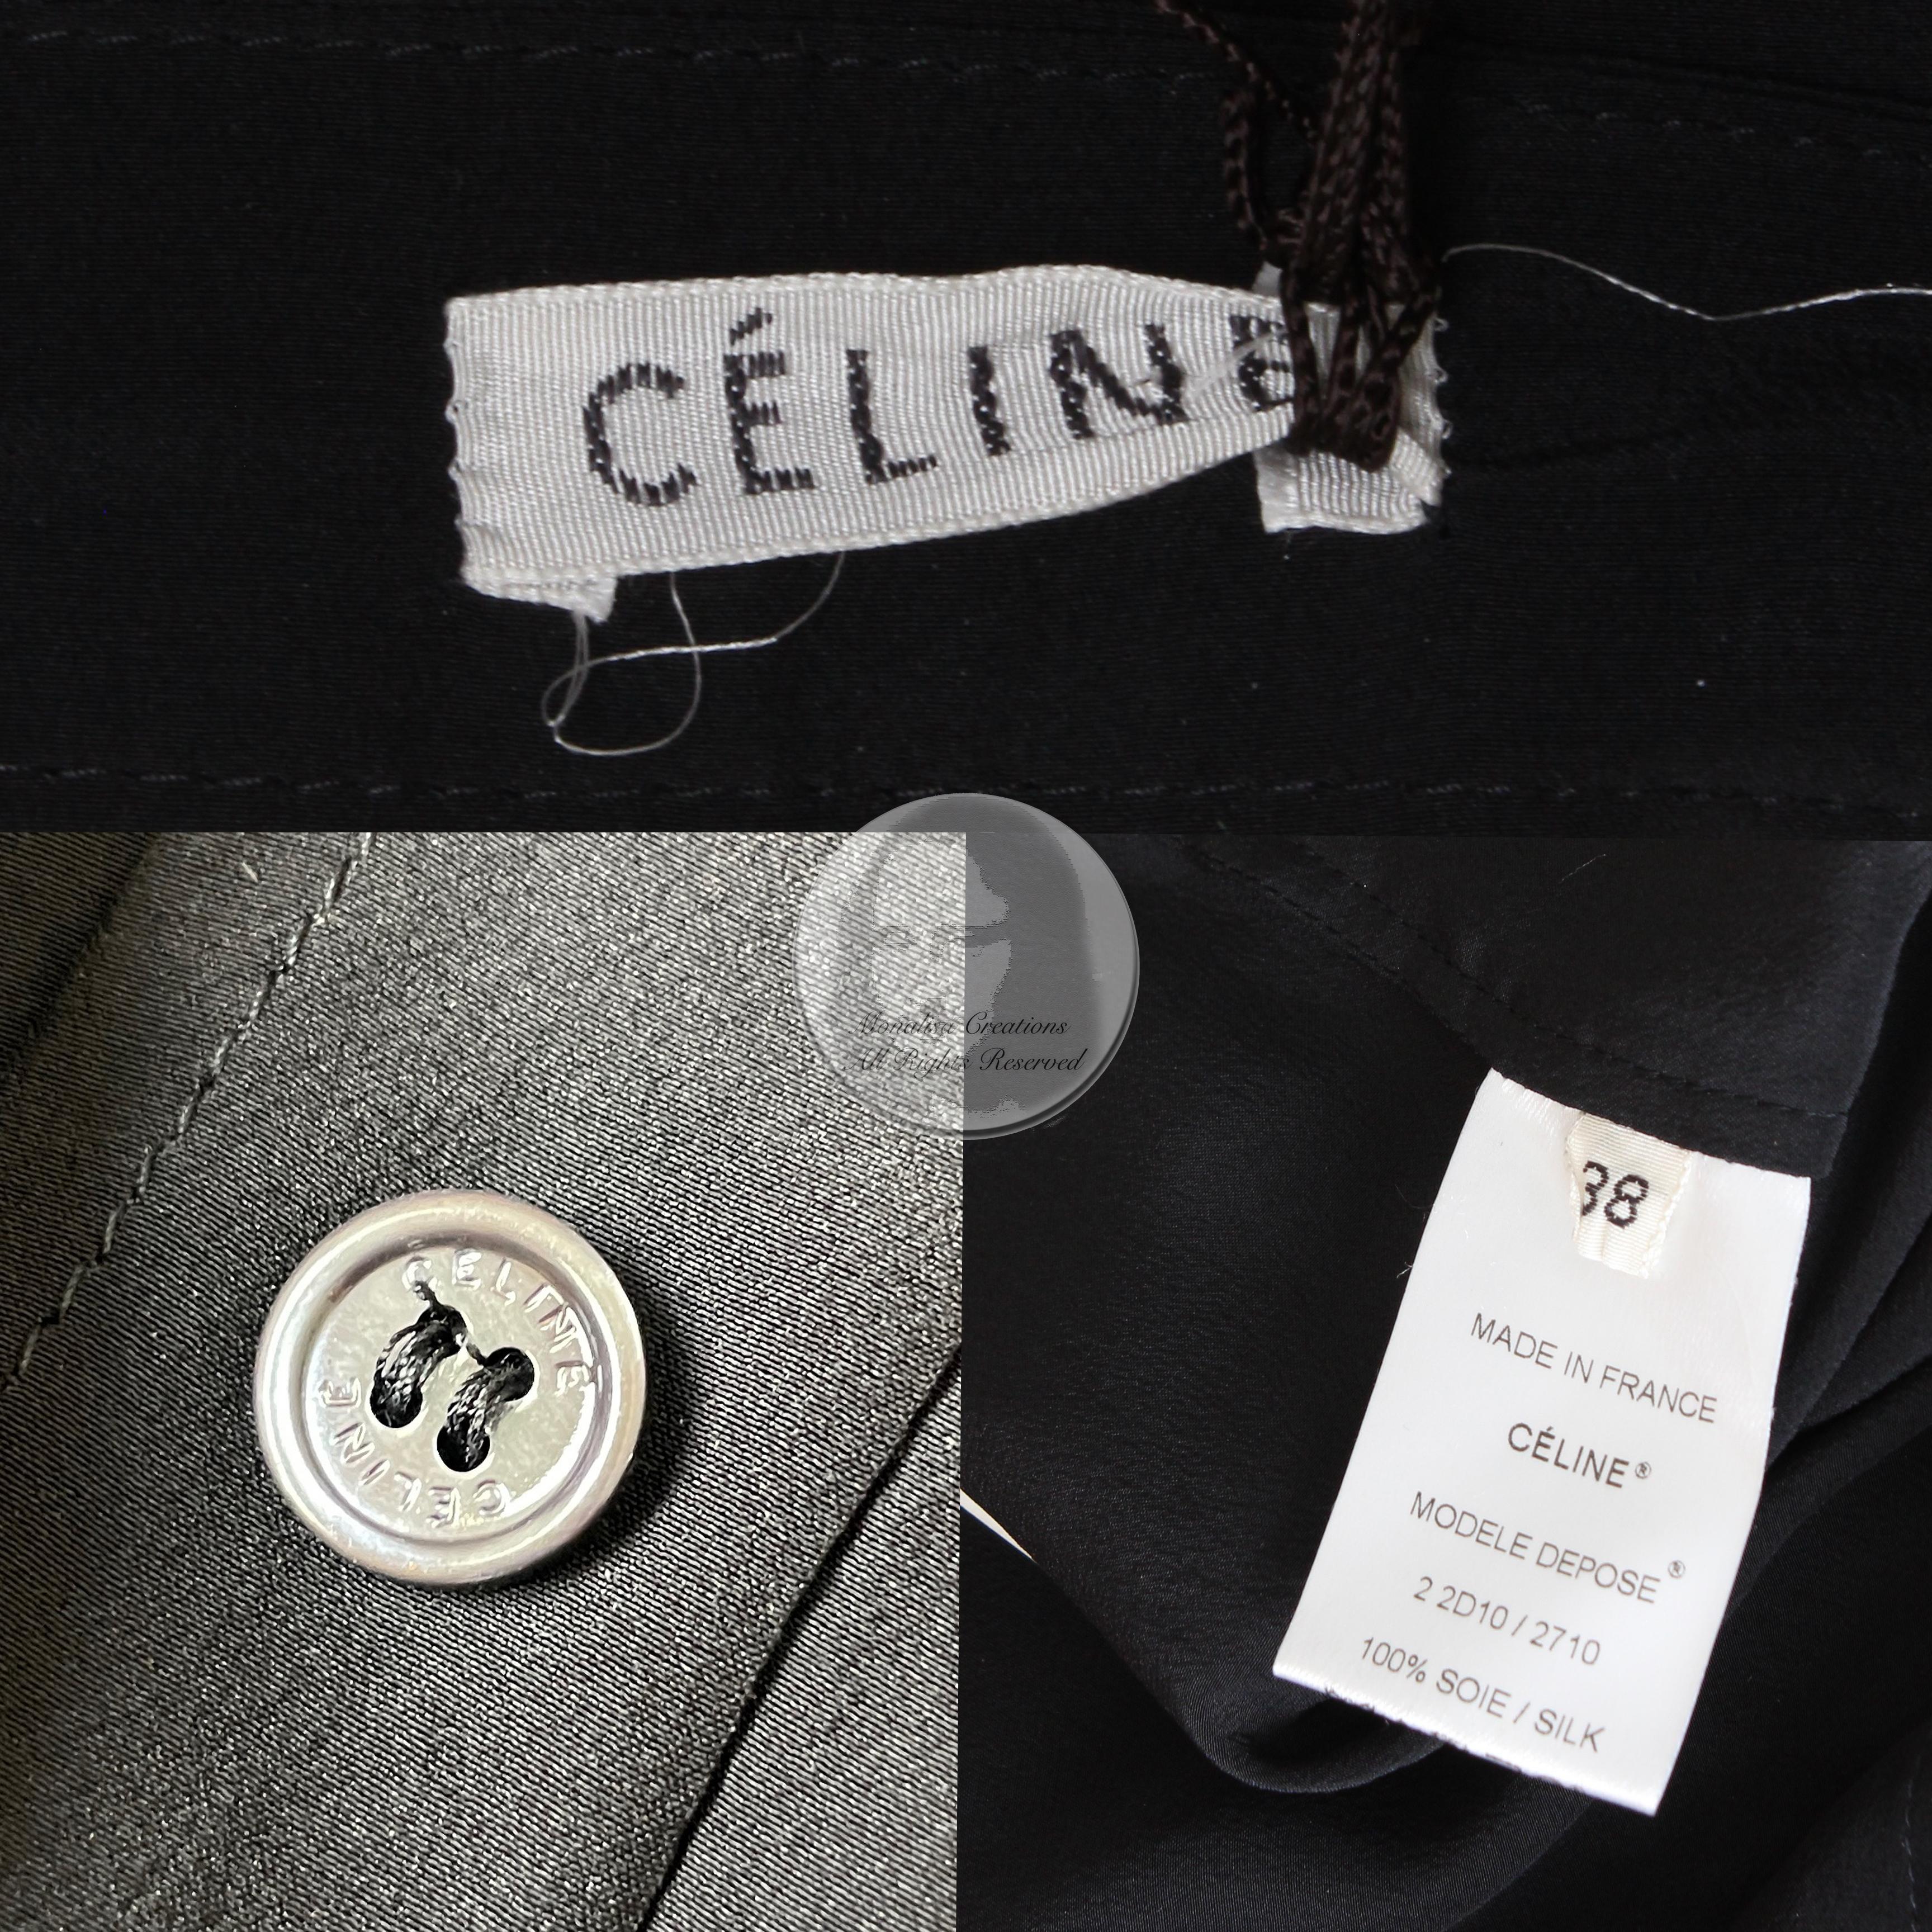 Celine Paris Silk Skirt Button Front Patch Pocket Phoebe Philo Black NWT Size 38 For Sale 5